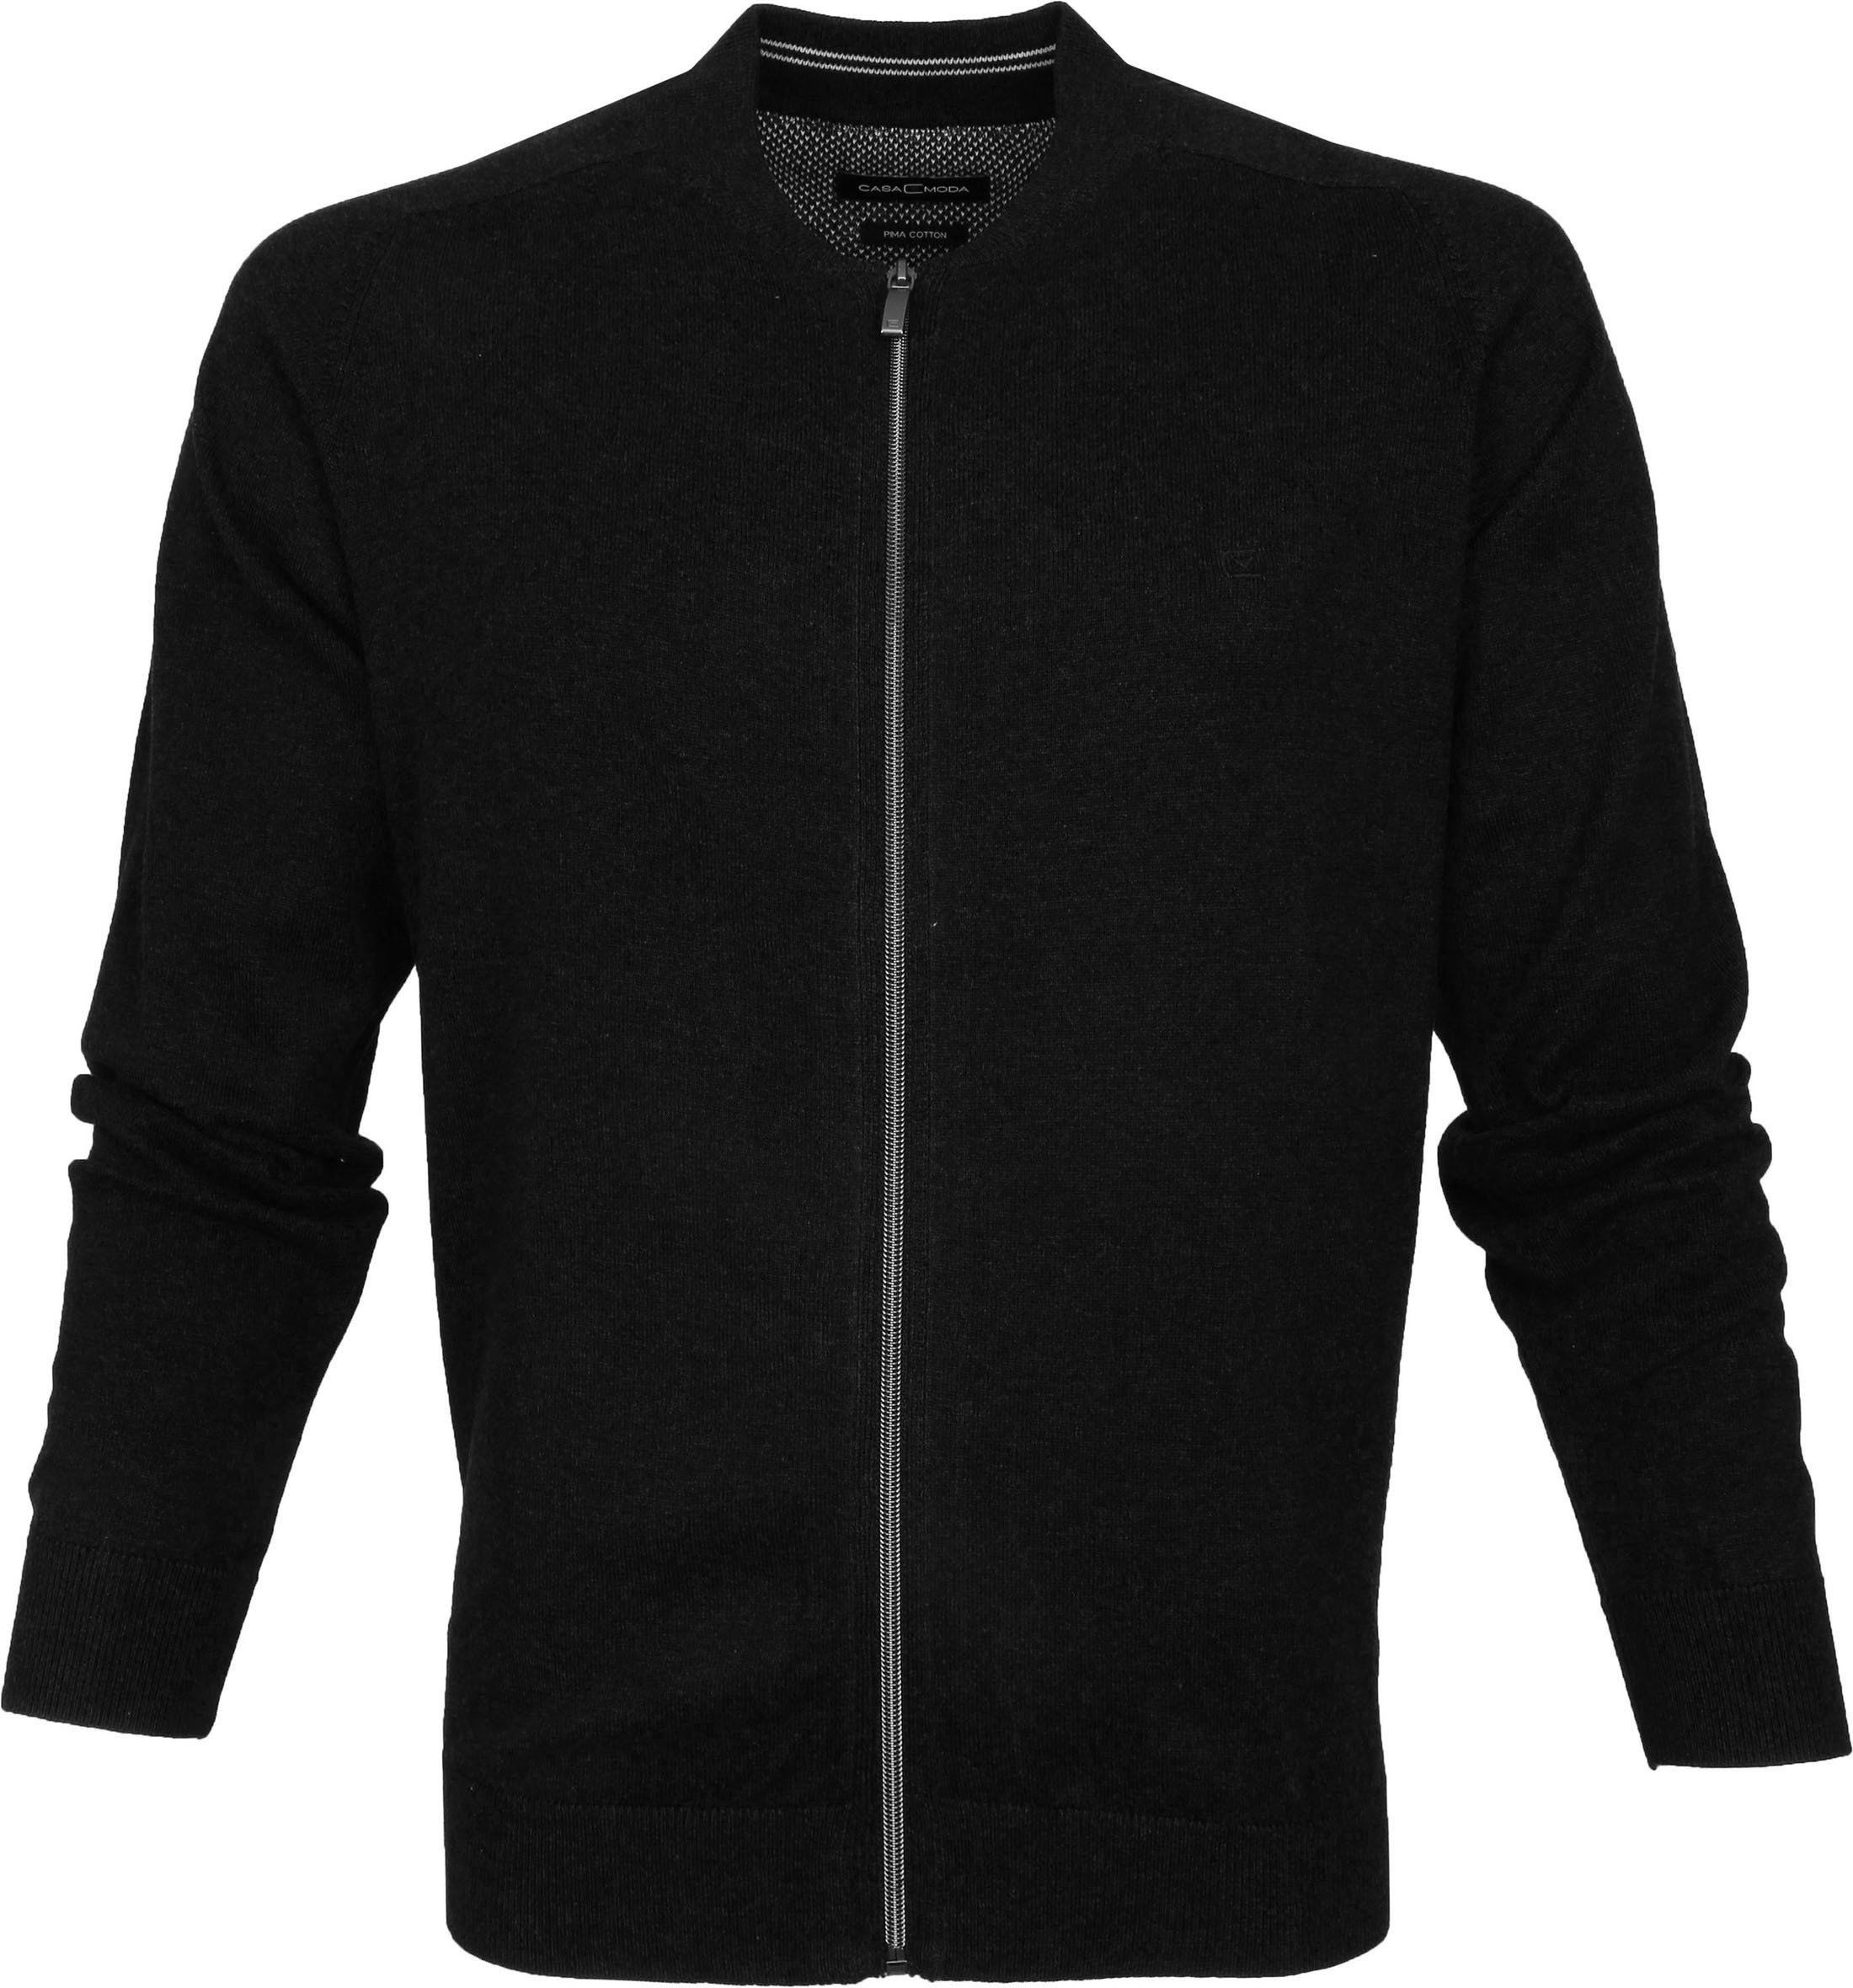 Casa Moda Pullover Zip Black size 3XL